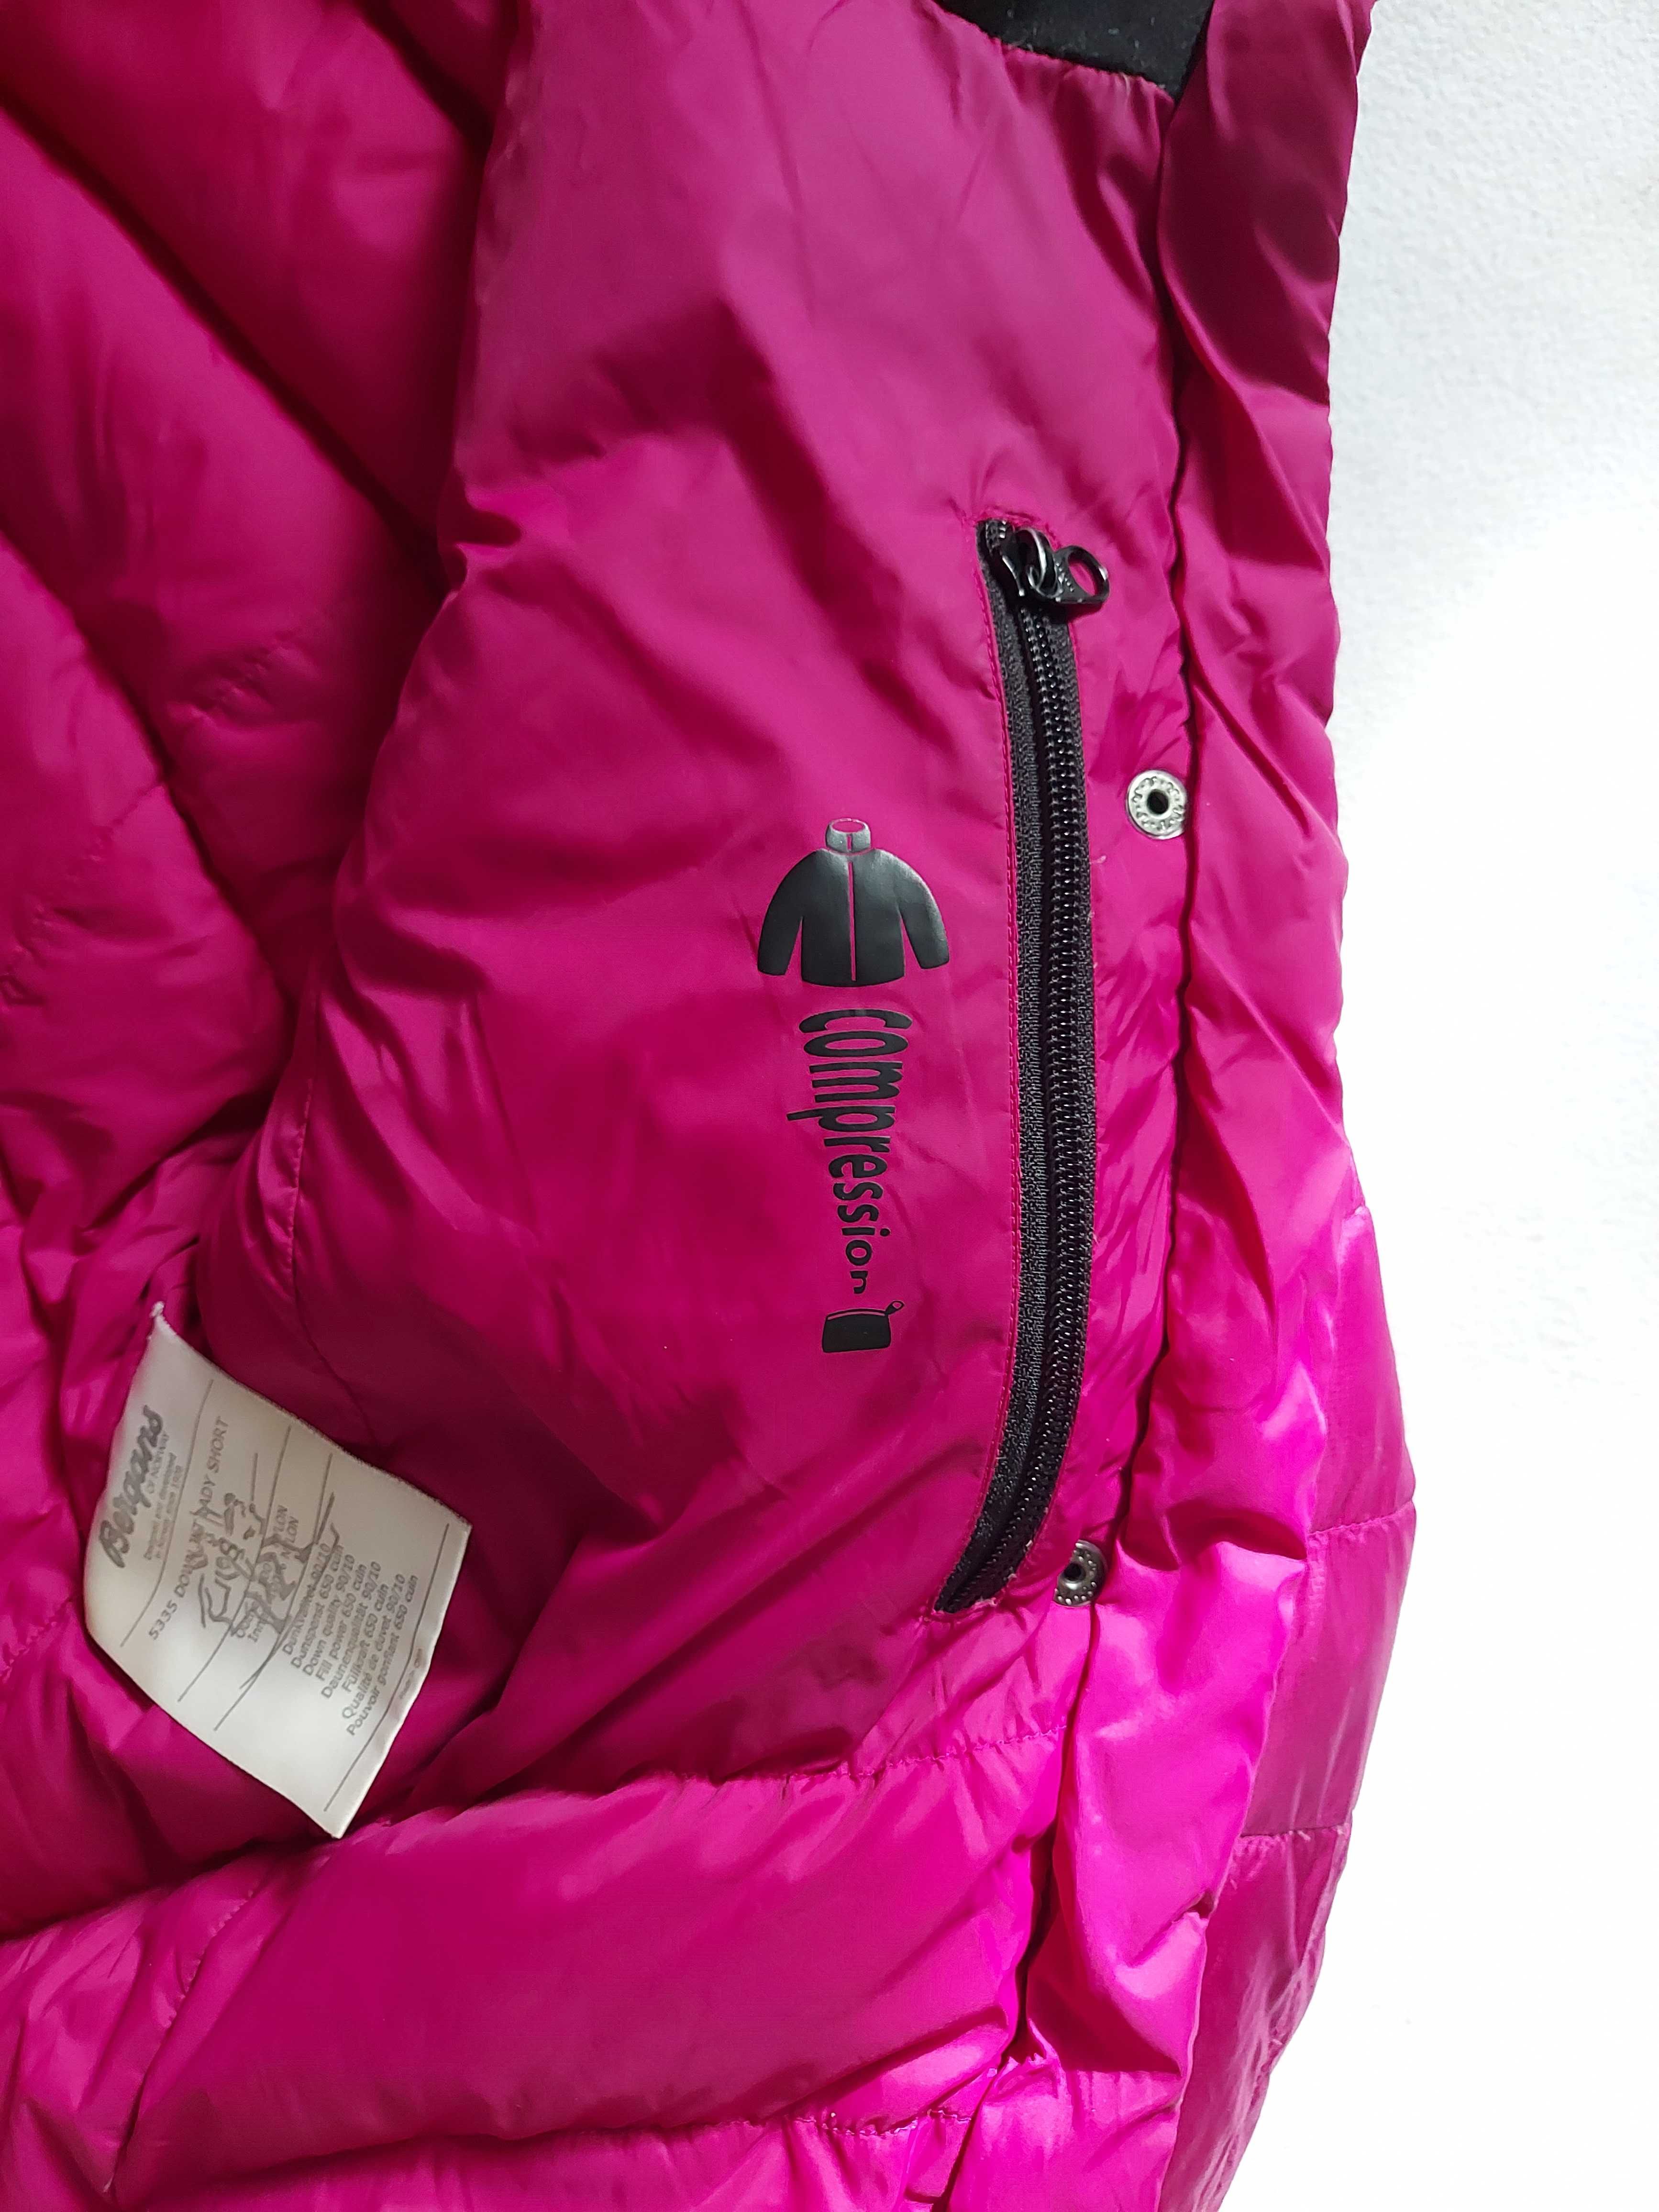 Дамско пухено яке Bergans of Norway, размер S38 топло зимно яке